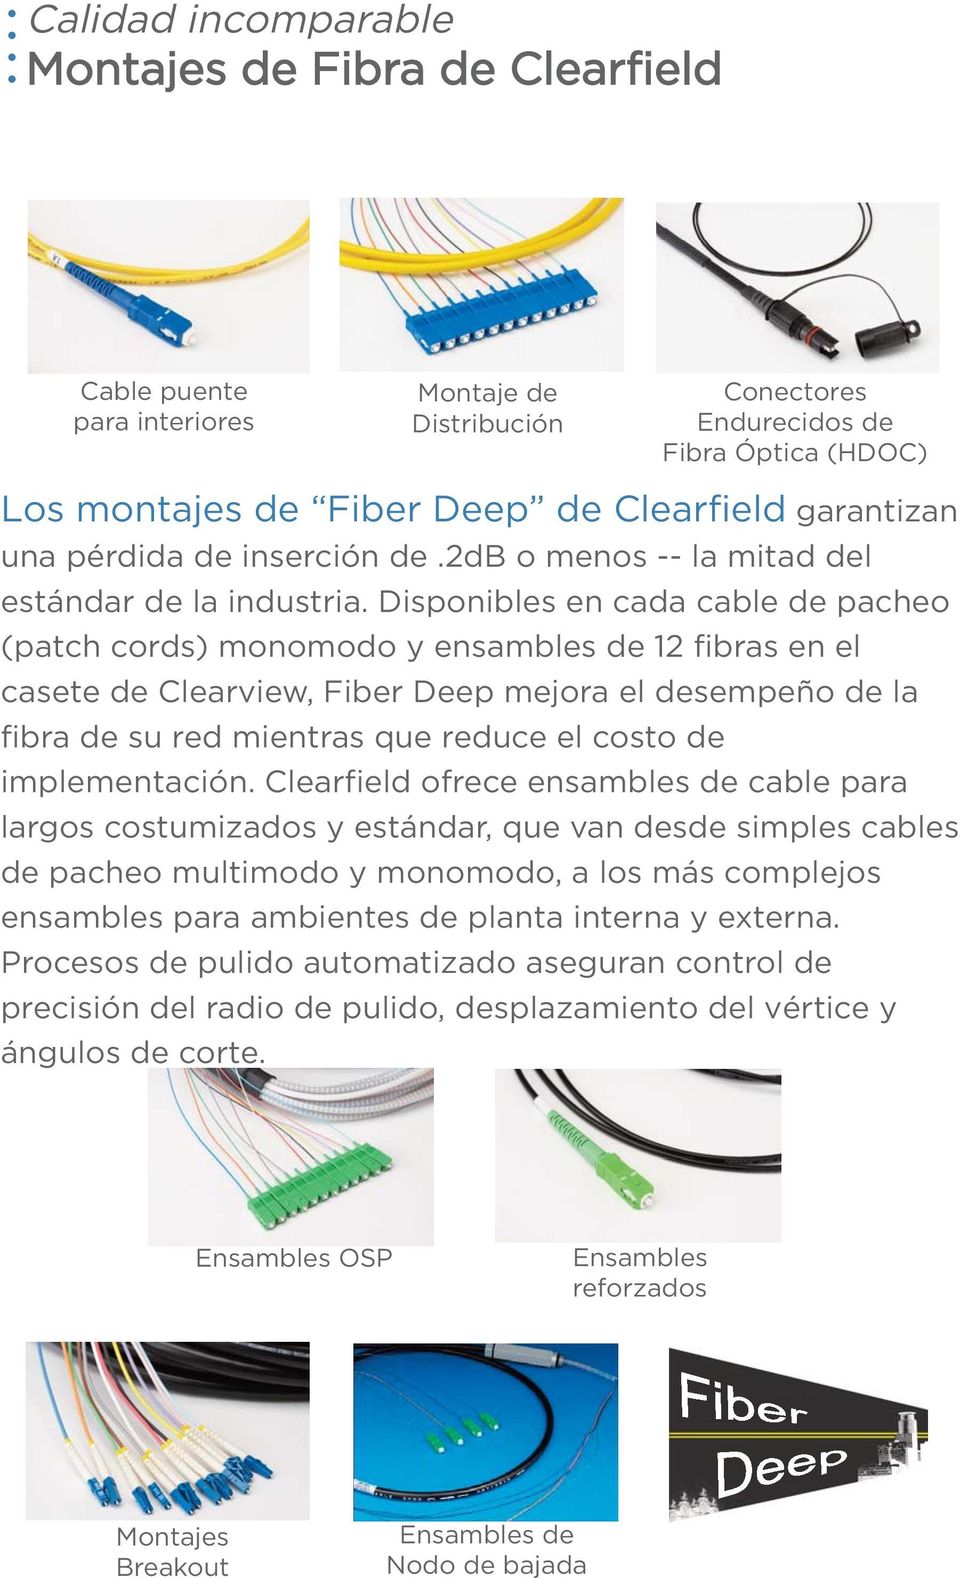 Disponibles en cada cable de pacheo (patch cords) monomodo y ensambles de 12 fibras en el casete de Clearview, Fiber Deep mejora el desempeño de la fibra de su red mientras que reduce el costo de